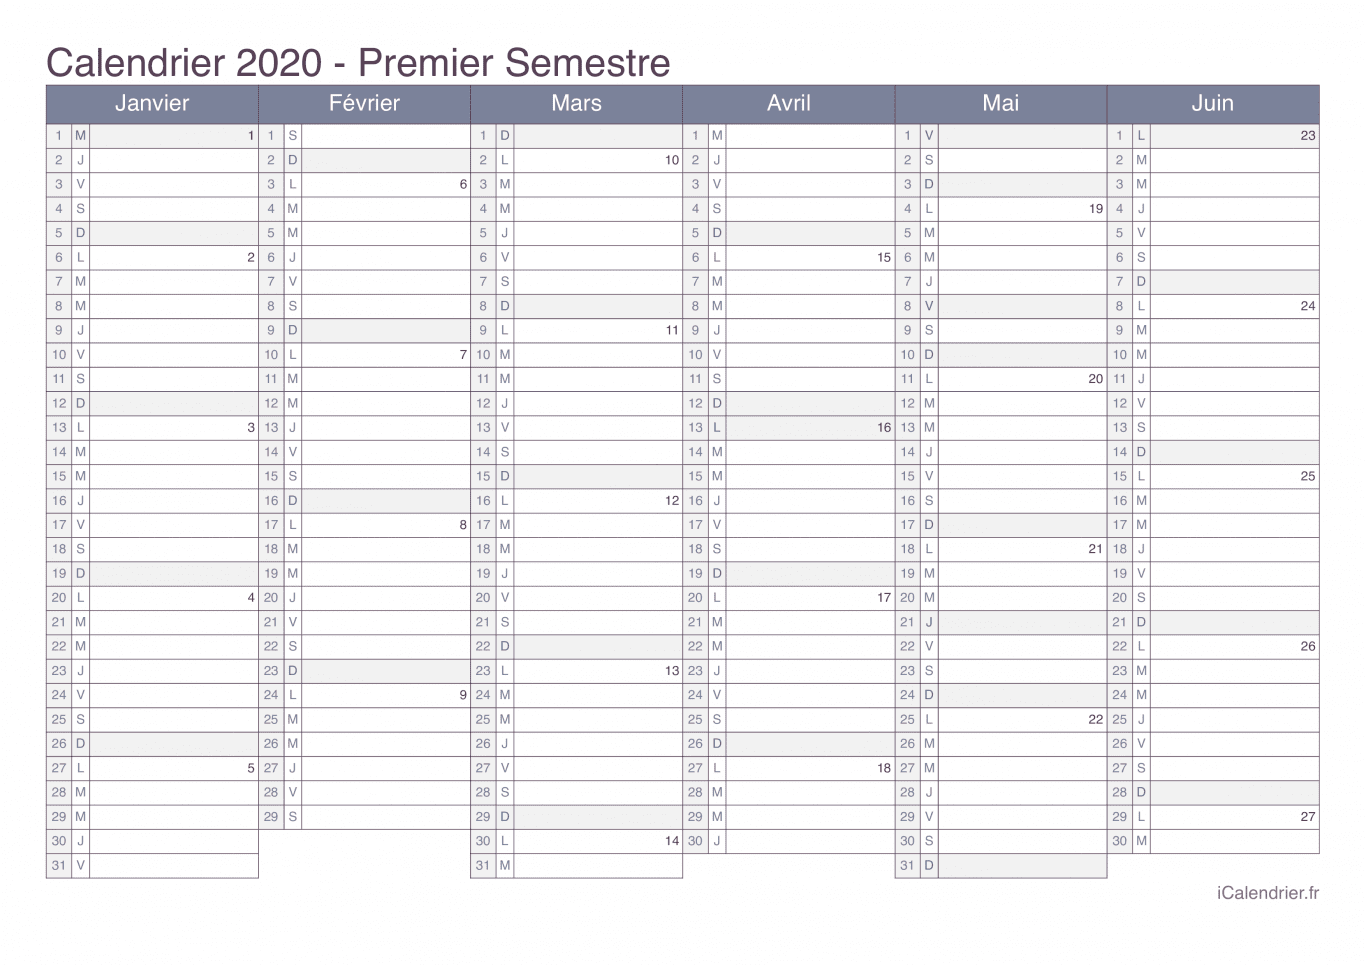 Calendrier par semestre avec numéros des semaines 2020 - Office